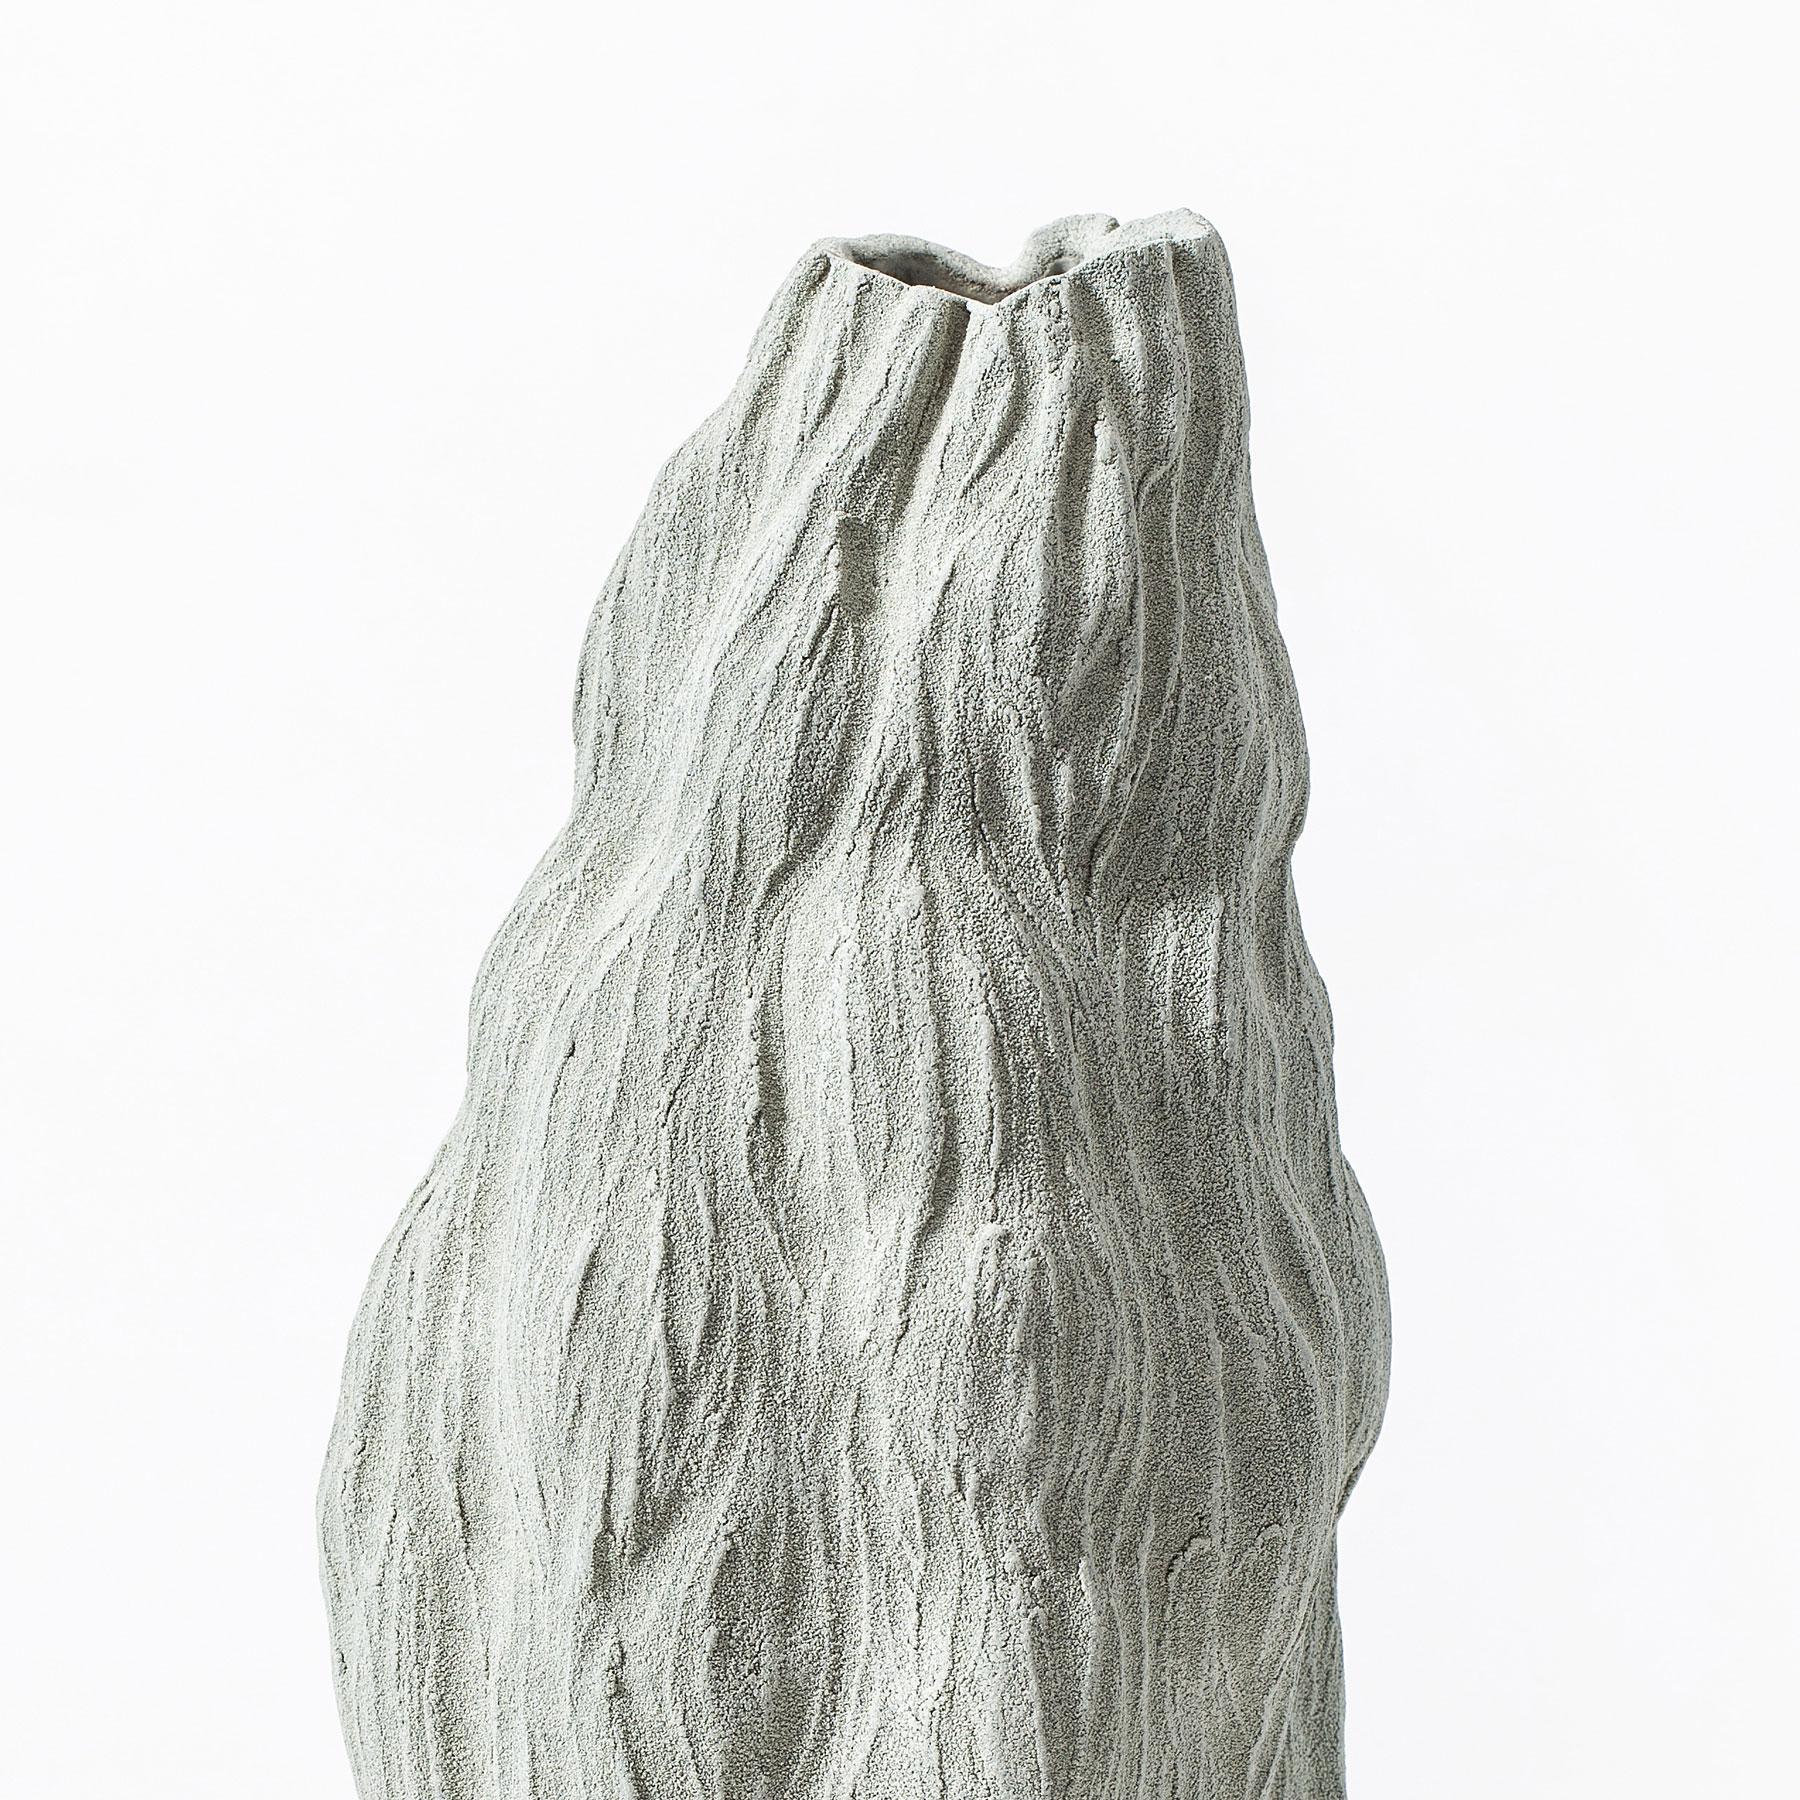 Modern Green Organic Vase by Turi Heisselberg Pedersen